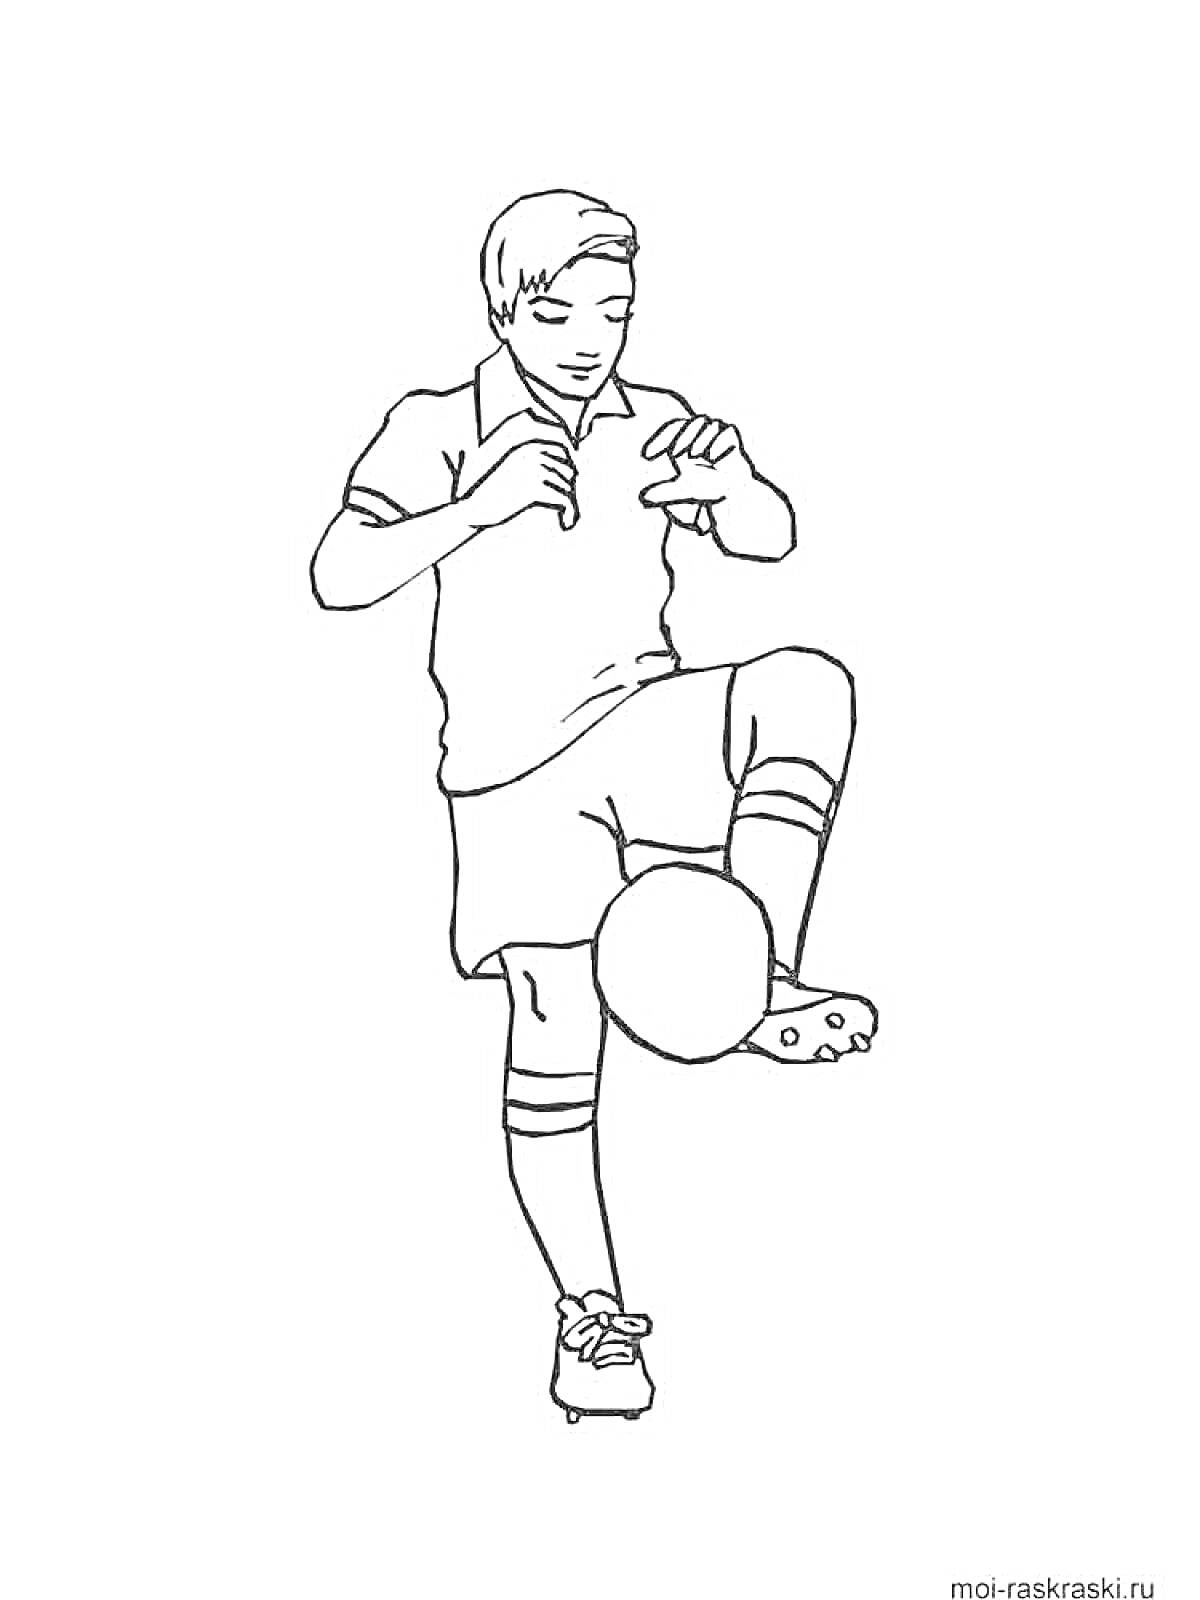 Футболист, жонглирующий мячом